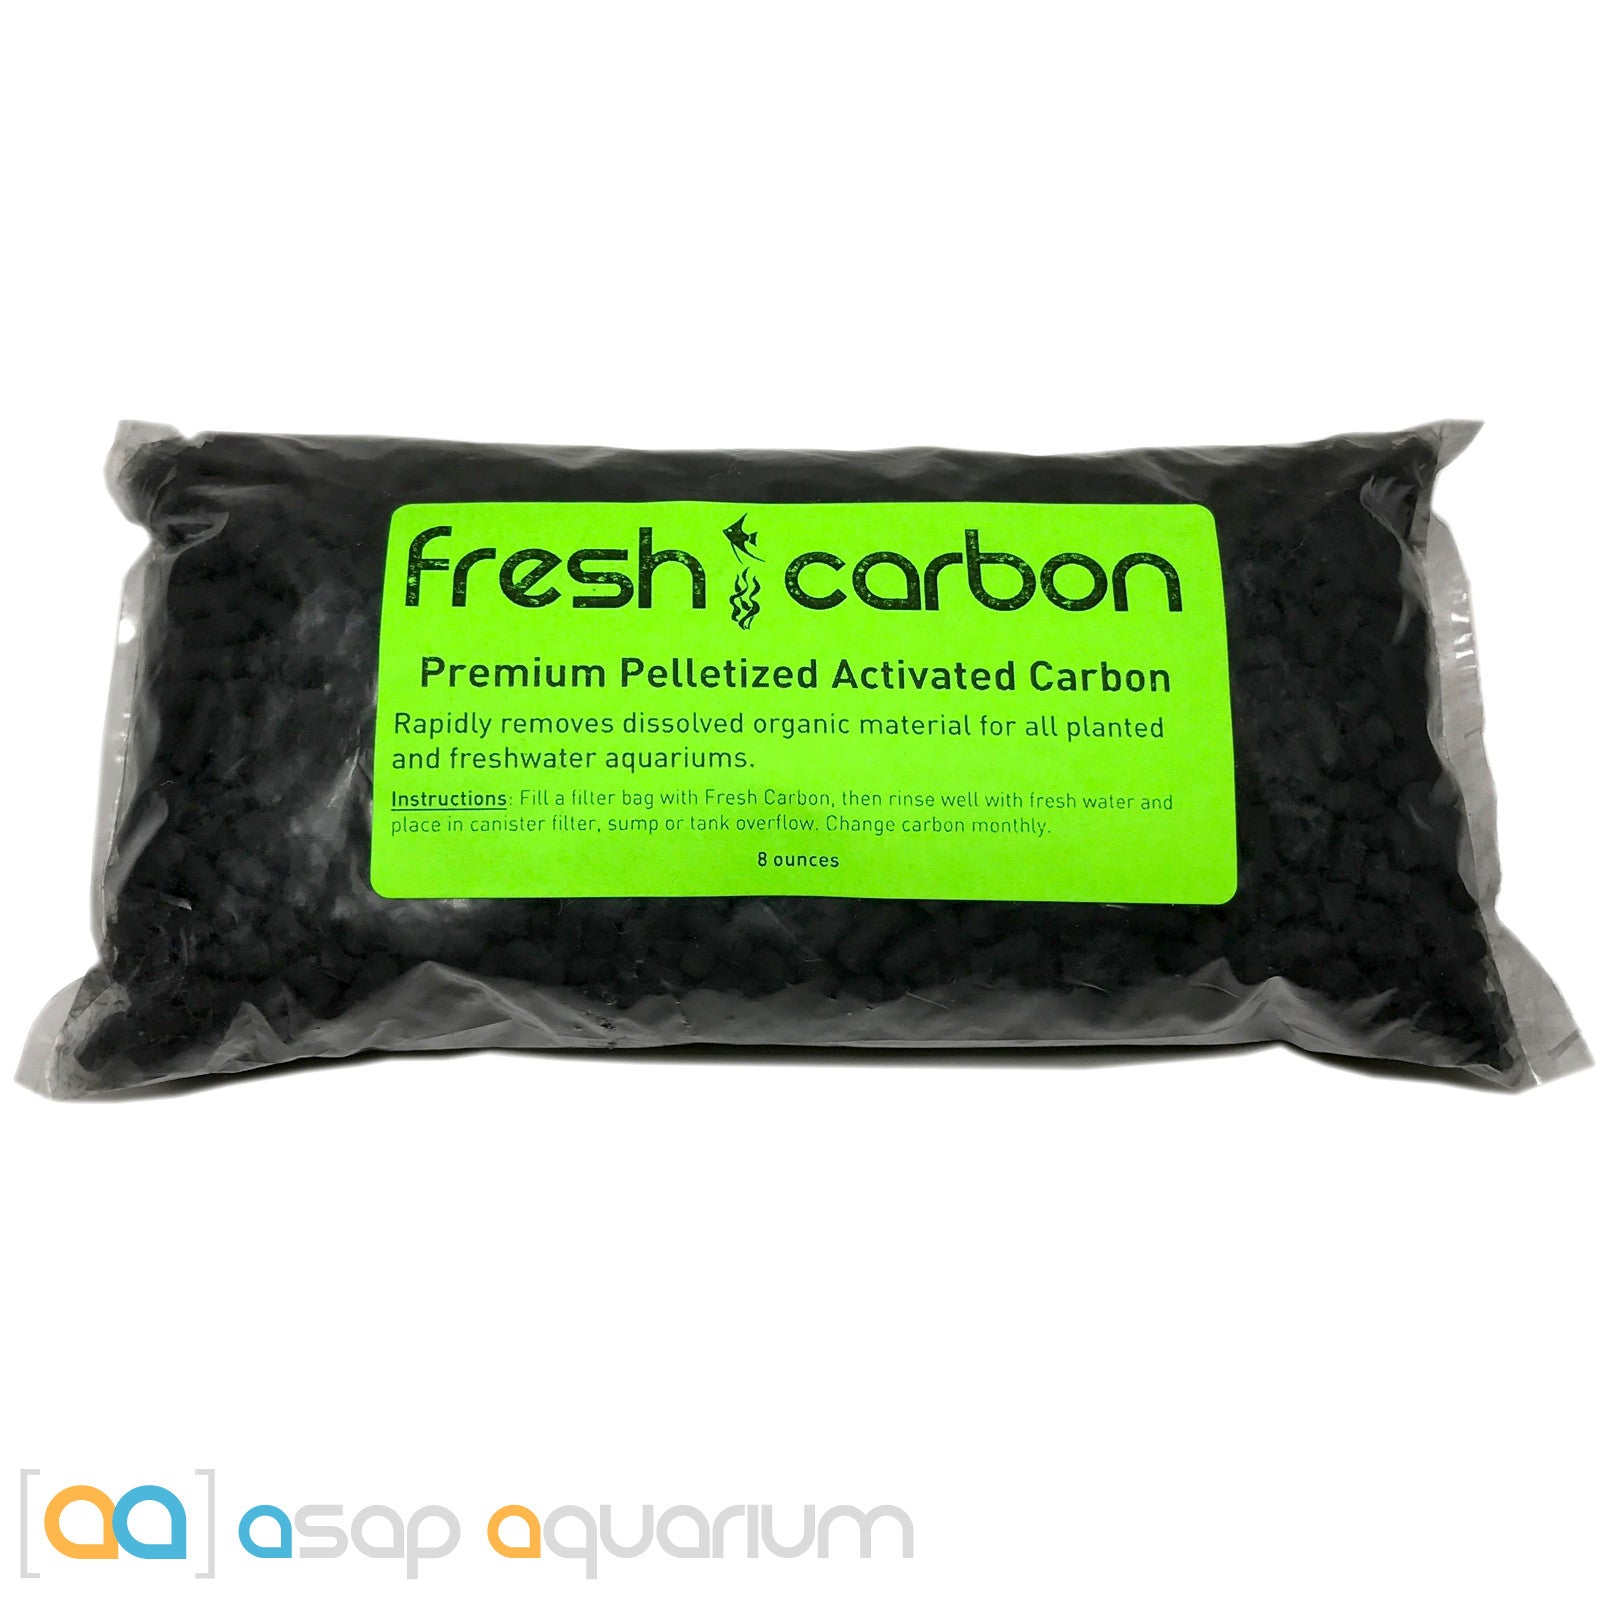 Fresh Carbon 8 oz. Premium Activated Pelletized Carbon for